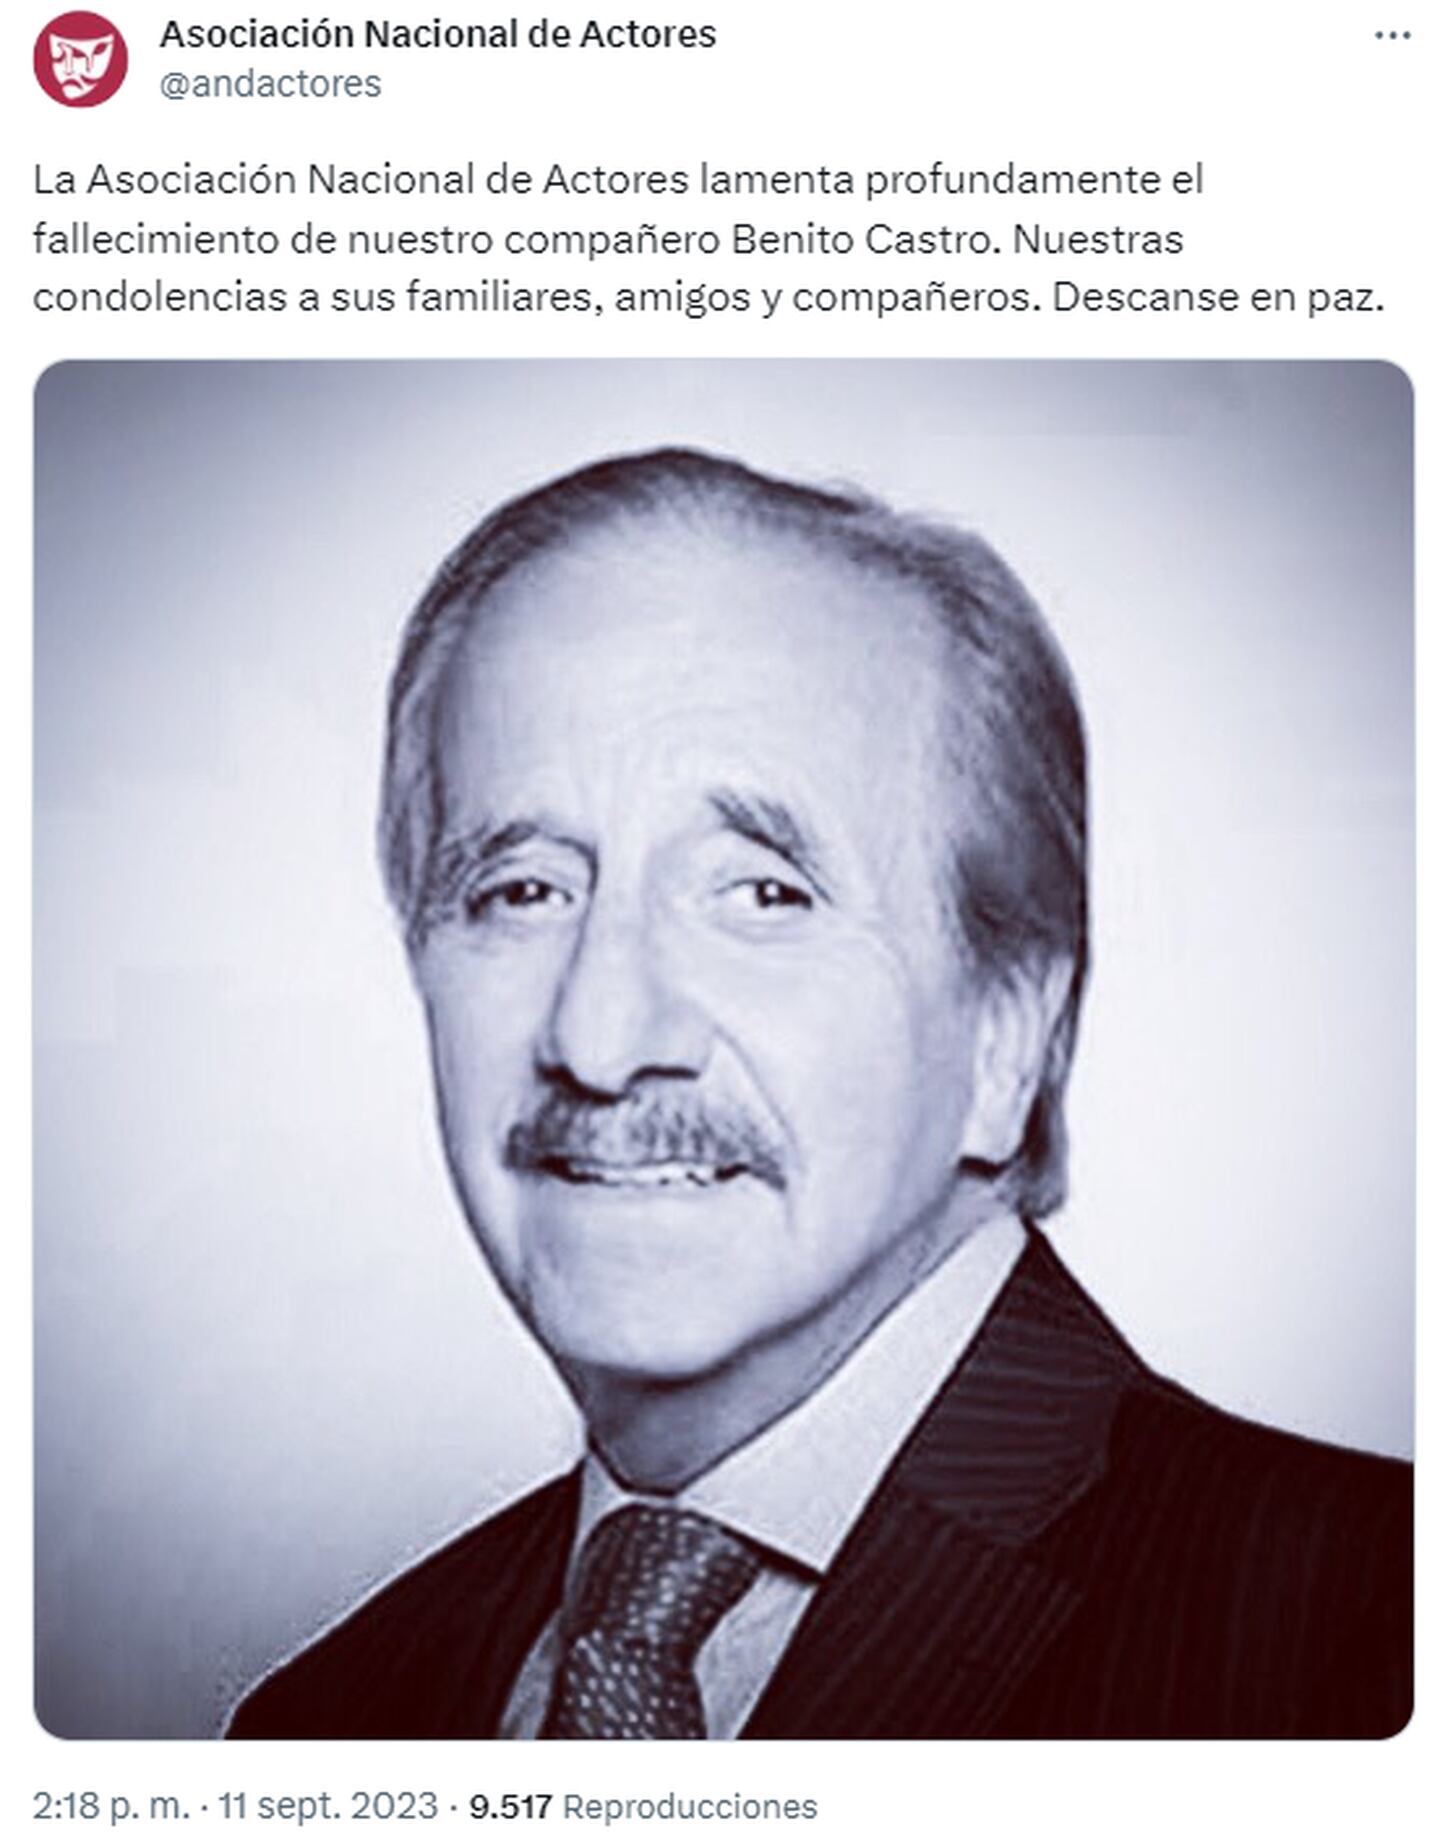 Benito Castro